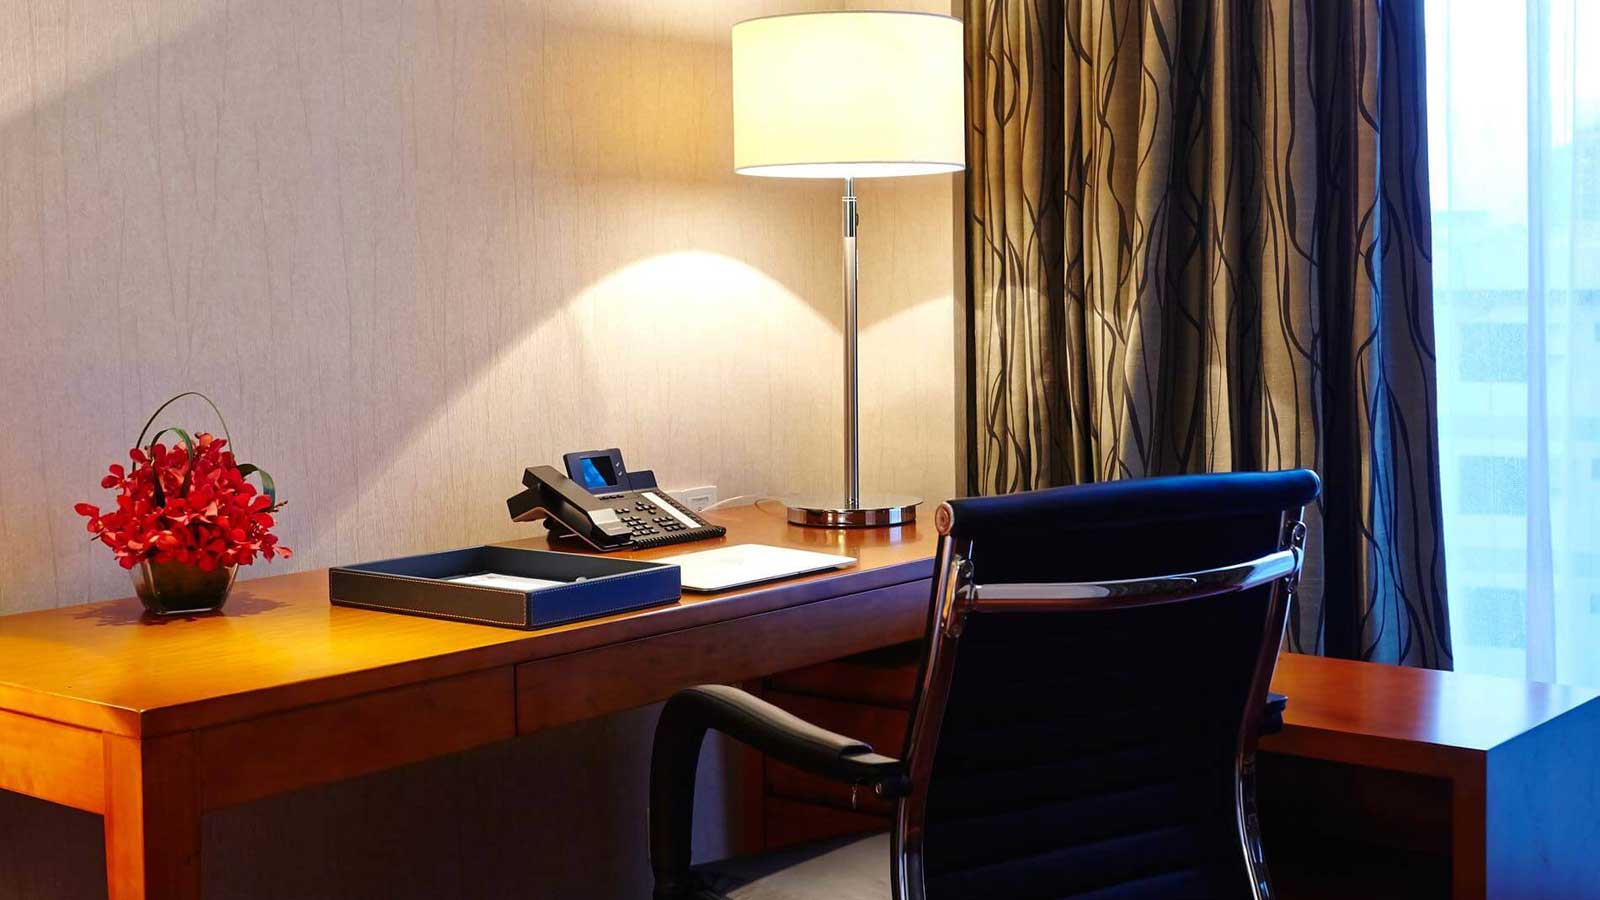 โต๊ะทำงาน - ห้องดีลักซ์ สตูดิโอ - โรงแรม อมารี ธากา บังคลาเทศ - อมารี ธากา บังคลาเทศ